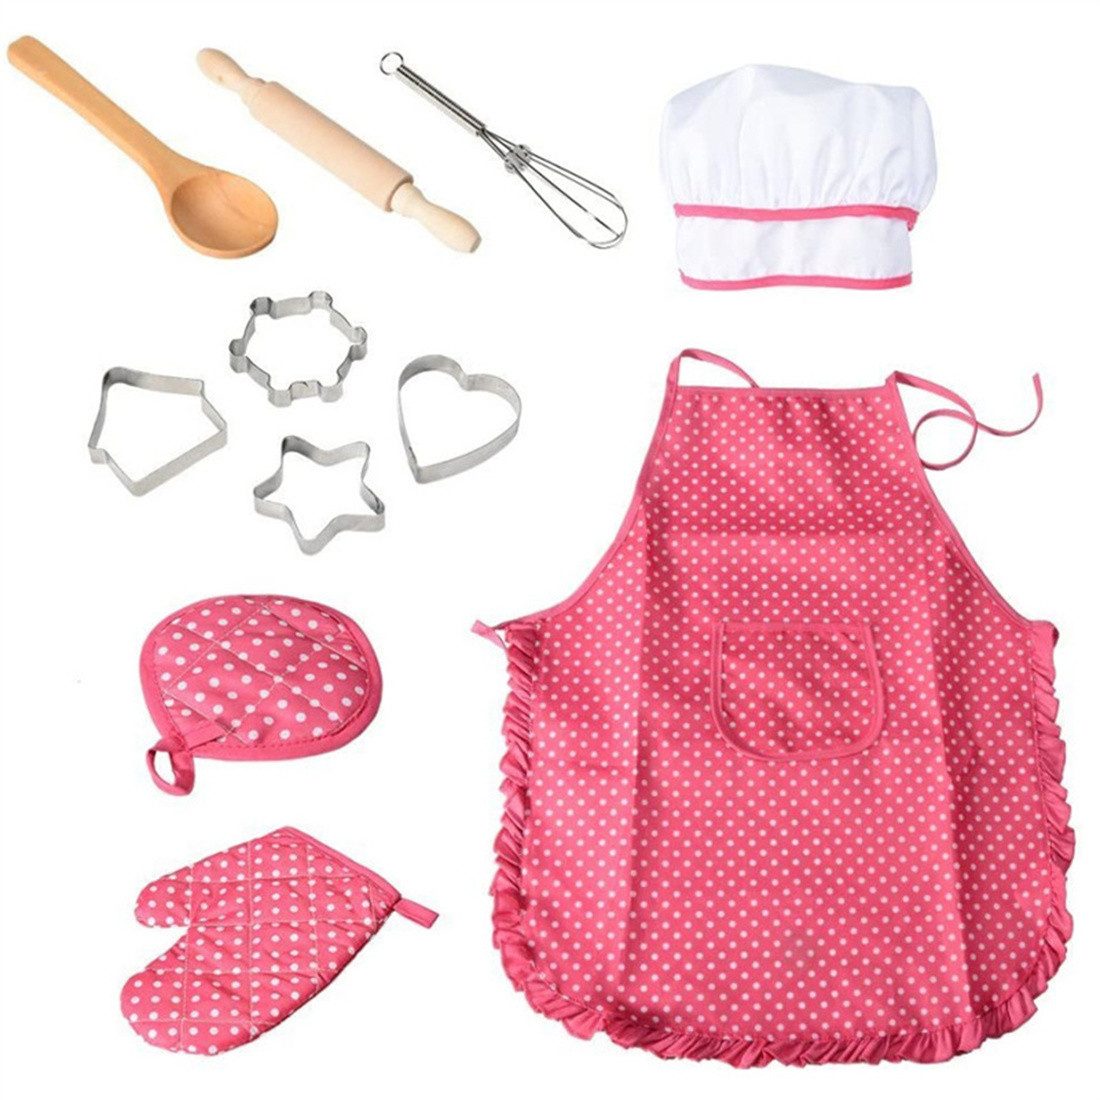 BOTERS Kinder-Küchenset Kinder-Backform-Werkzeugsatz,11-teiliges Küchengeschirr-Kuchenform-Set